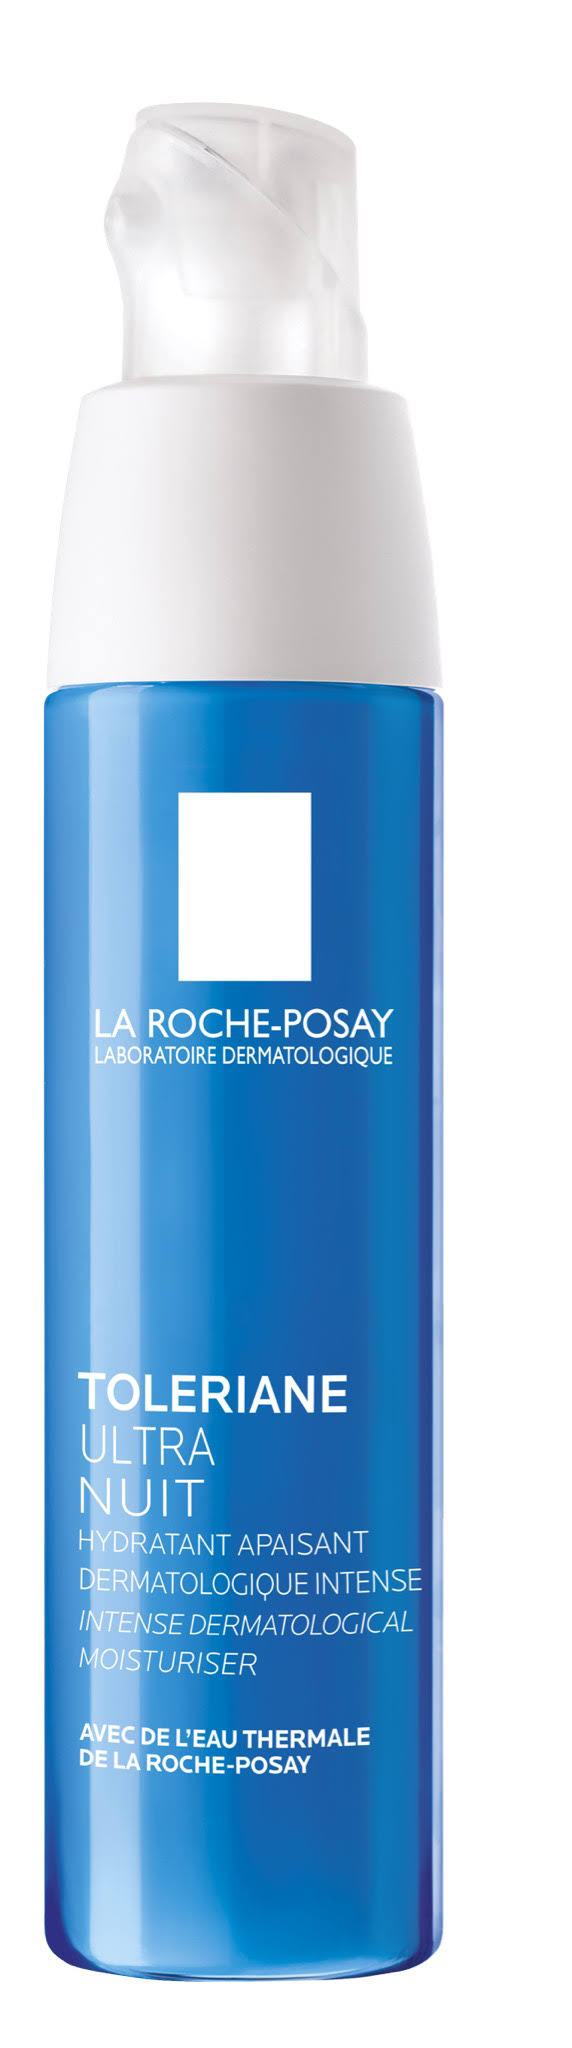 La Roche Posay Toleriane Ultra Overnight Care Cream - 40ml